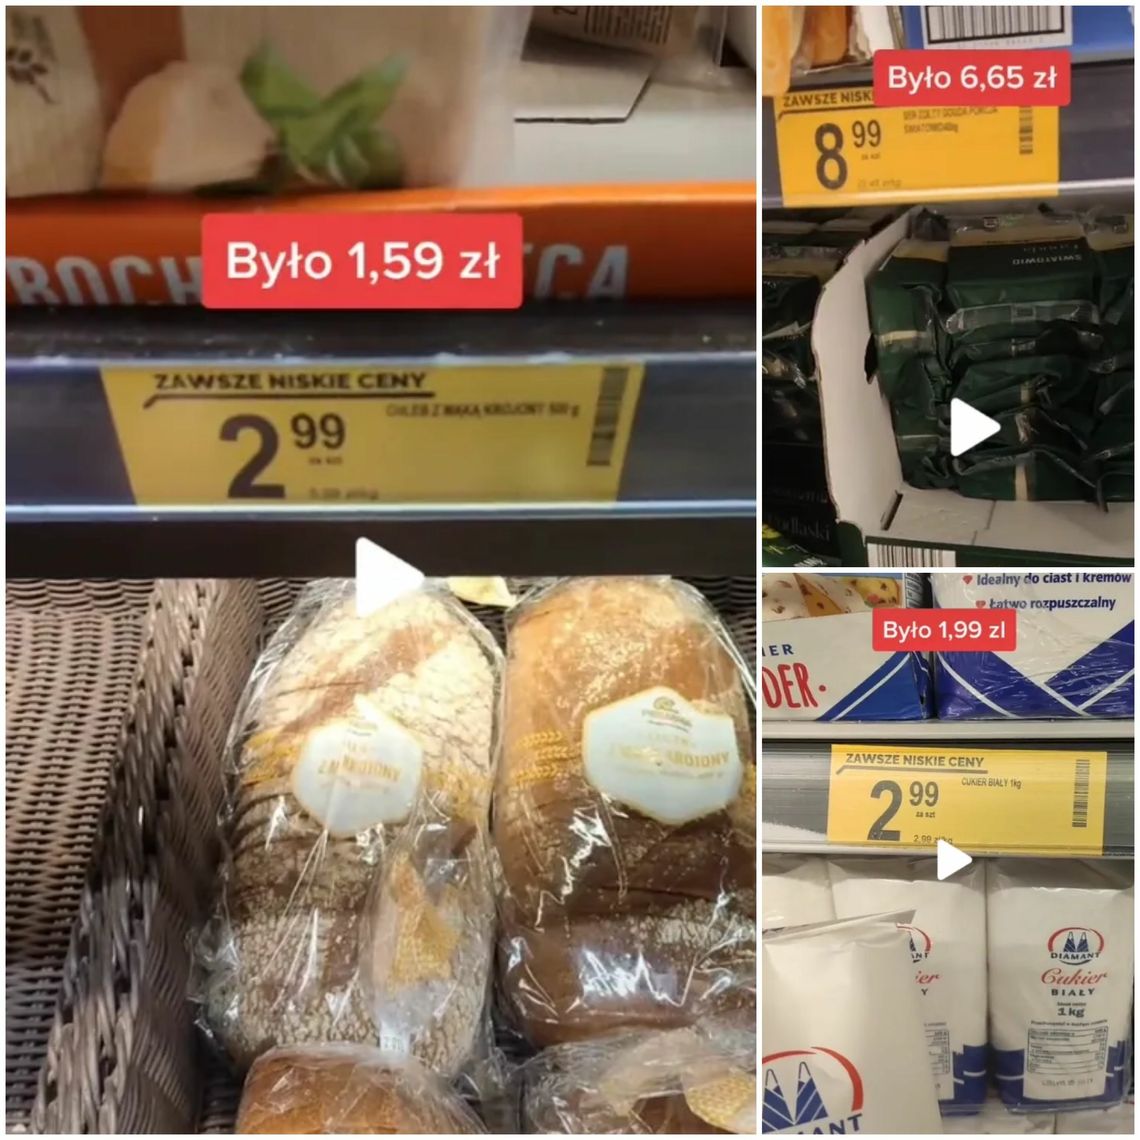 10 produktów z Biedronki w 2015 kosztowało 37,02 zł, a teraz 59,91 zł. Podrożały o 62%